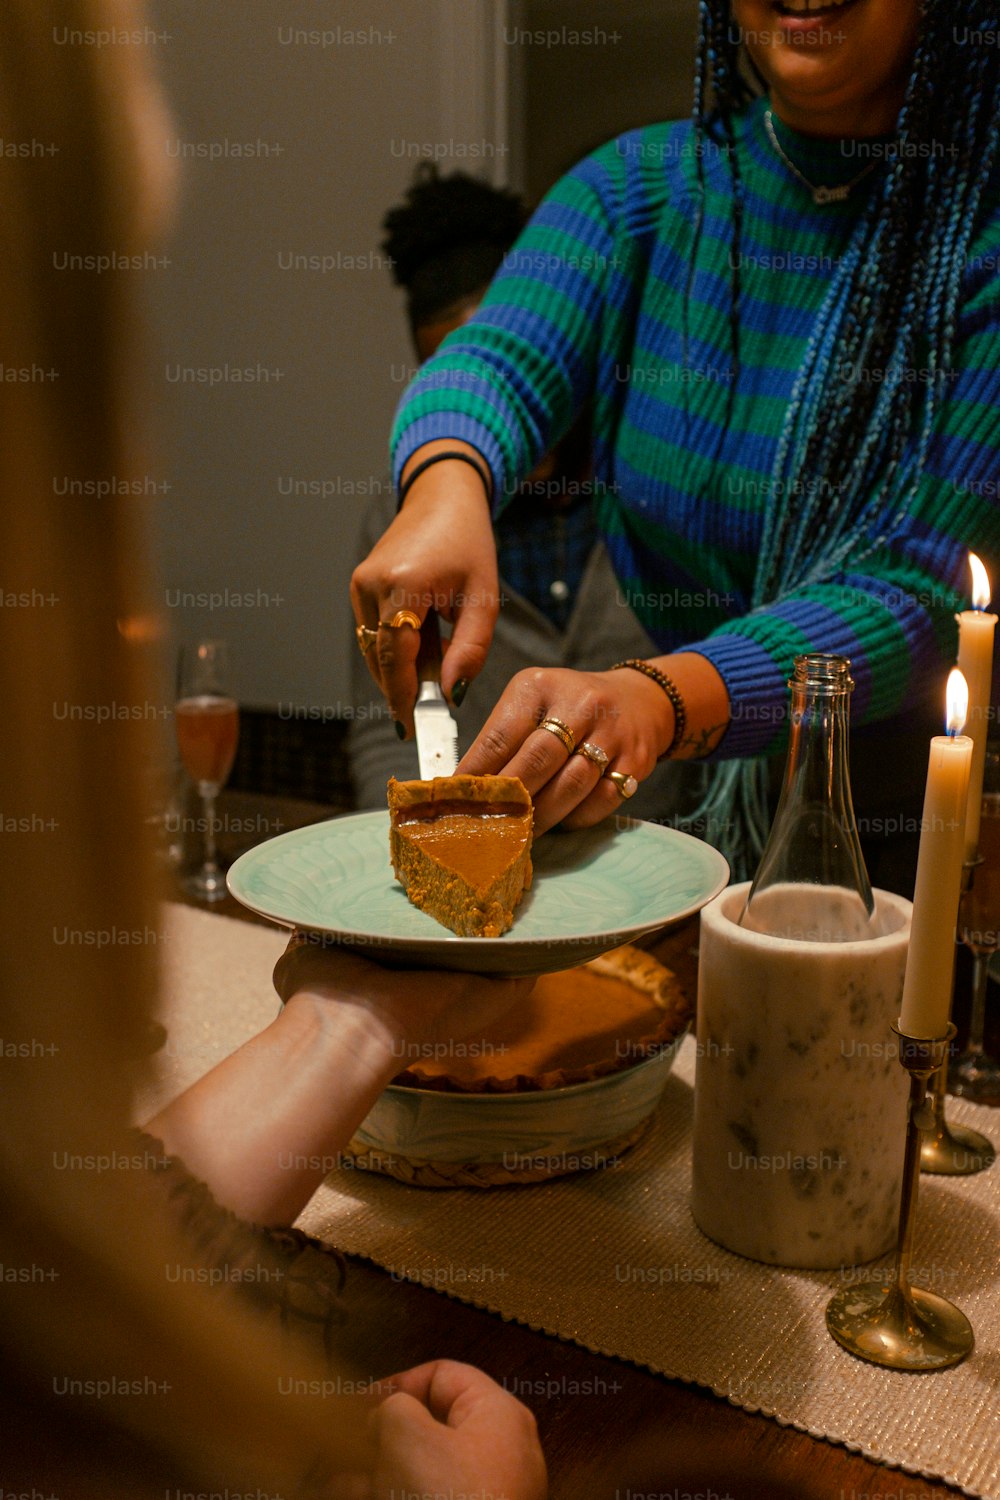 Una mujer cortando un pedazo de pastel en un plato